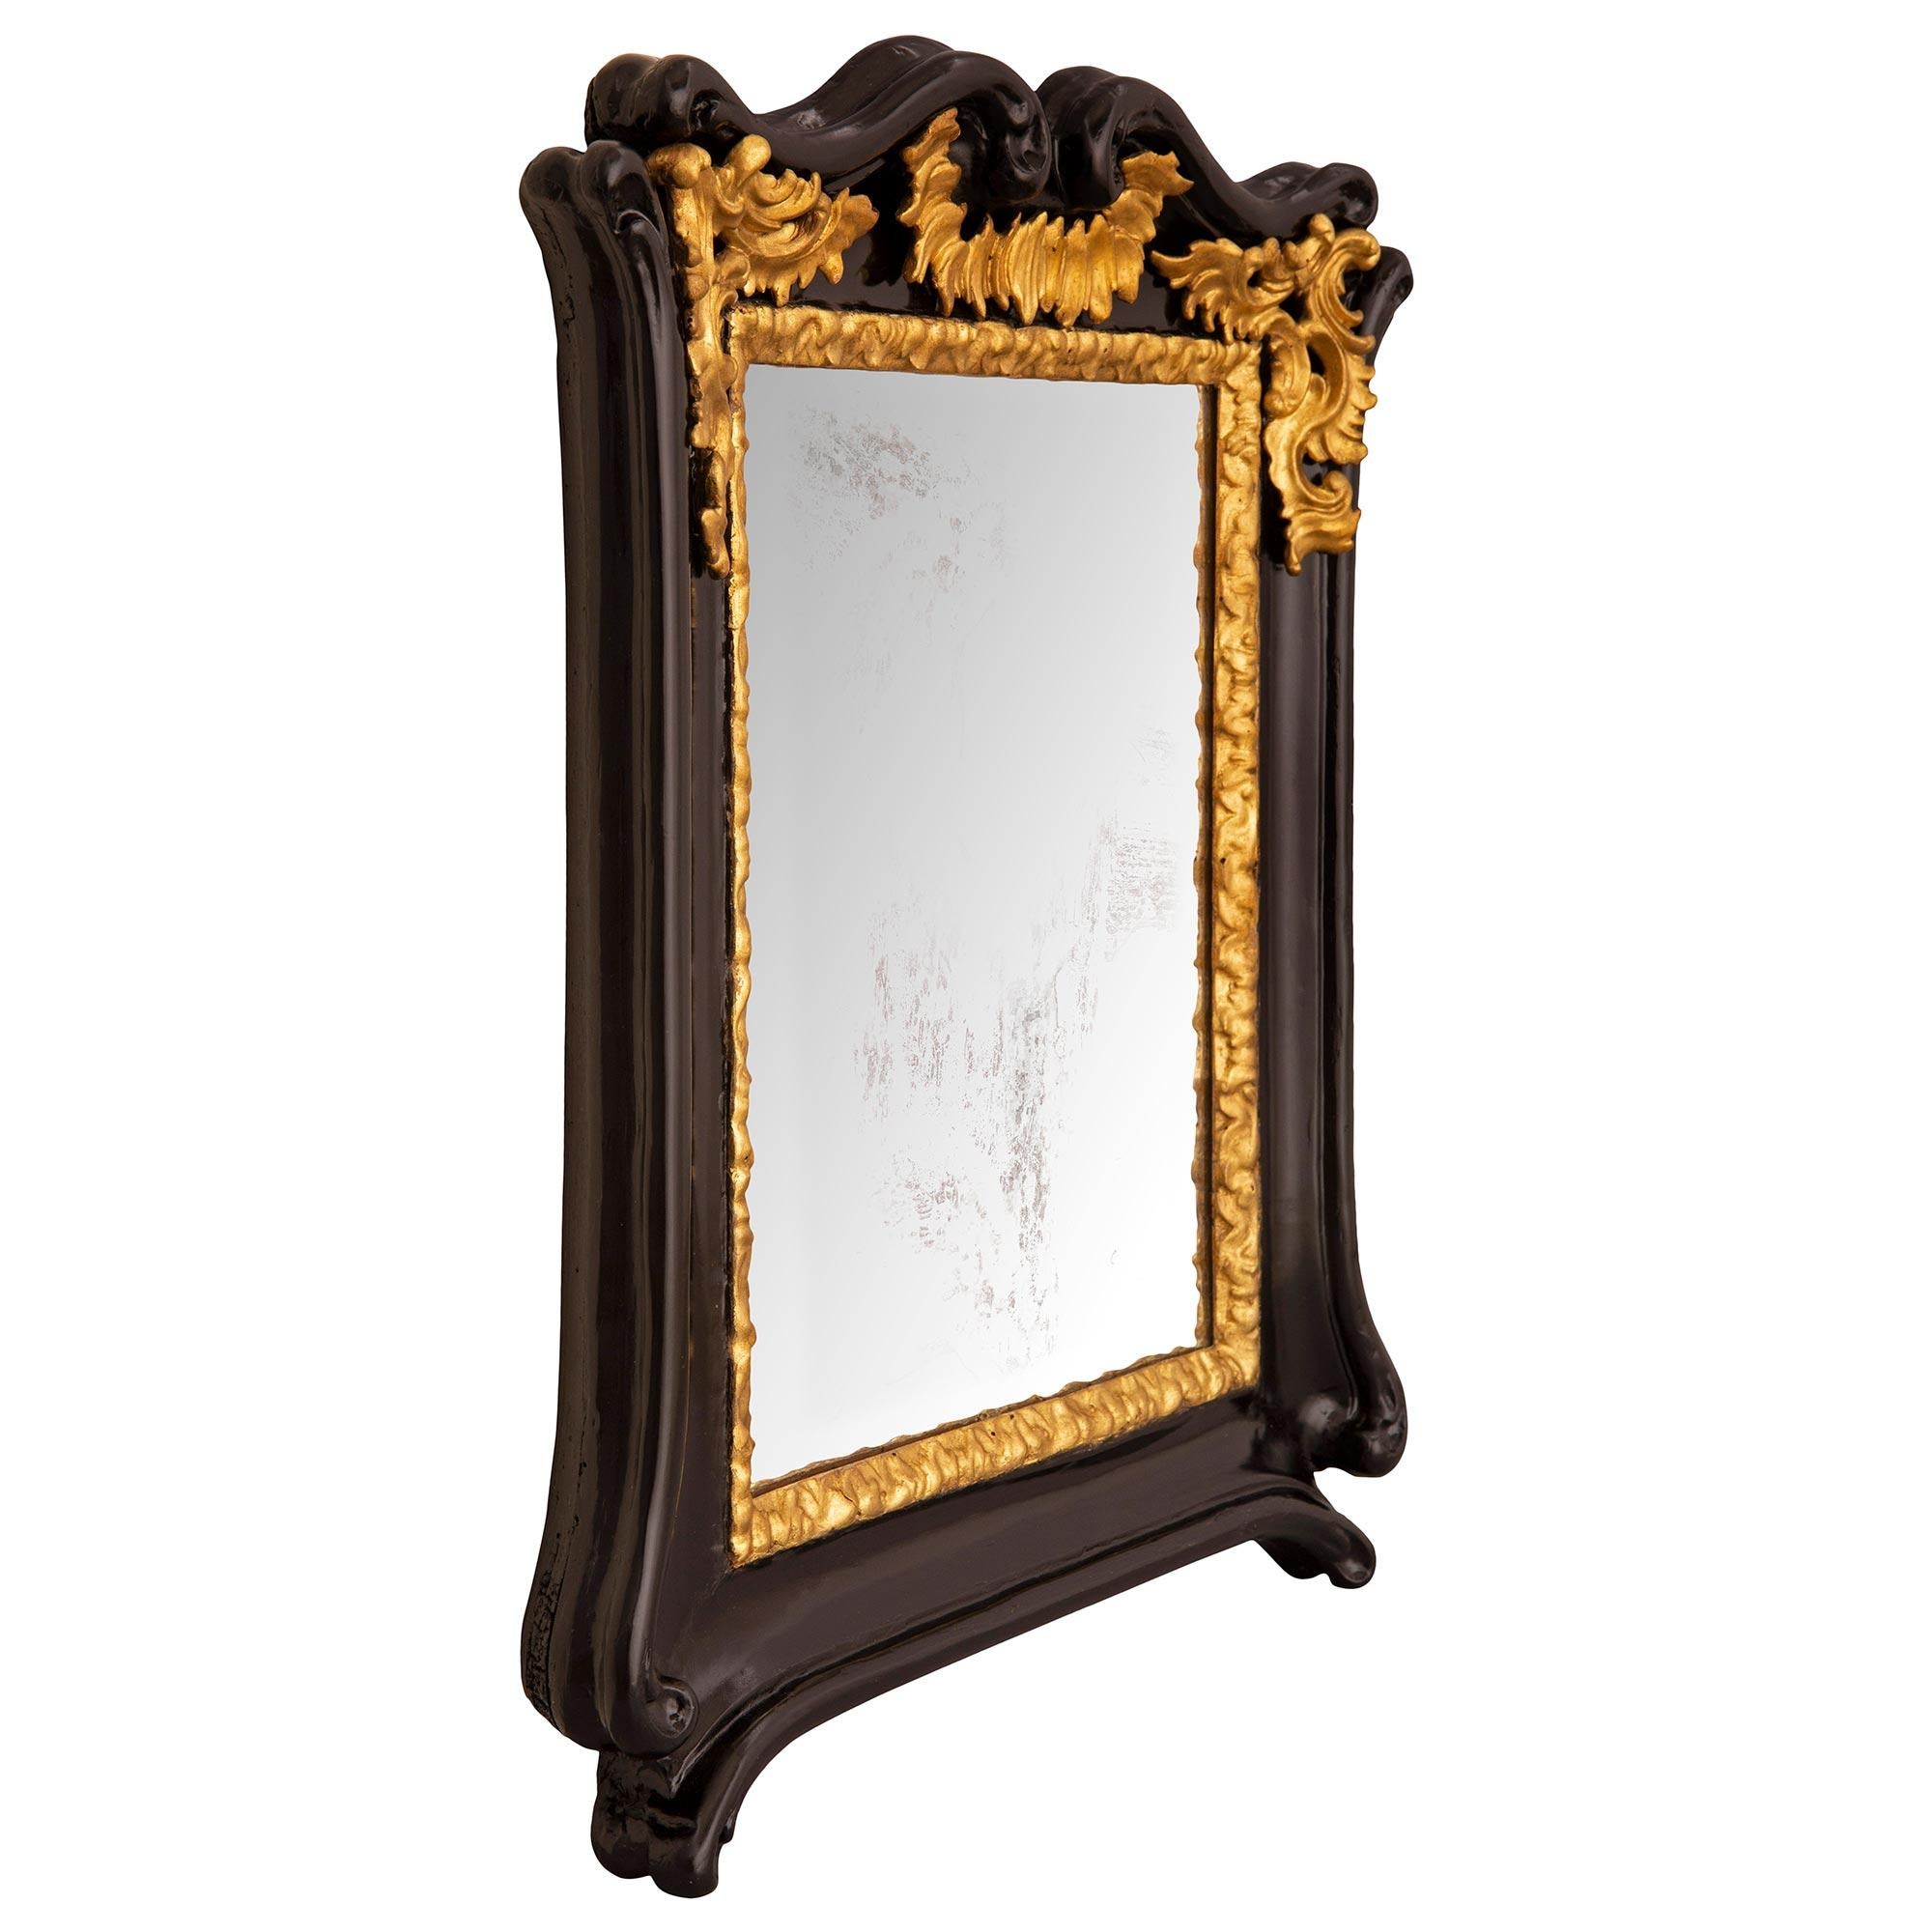 Un fabuleux et très décoratif miroir baroque italien du 18ème siècle en bois de fruit et bois doré. Le miroir conserve sa plaque d'origine dans une élégante bordure en bois doré finement sculptée. Le cadre en bois d'arbre fruitier ébénisé présente